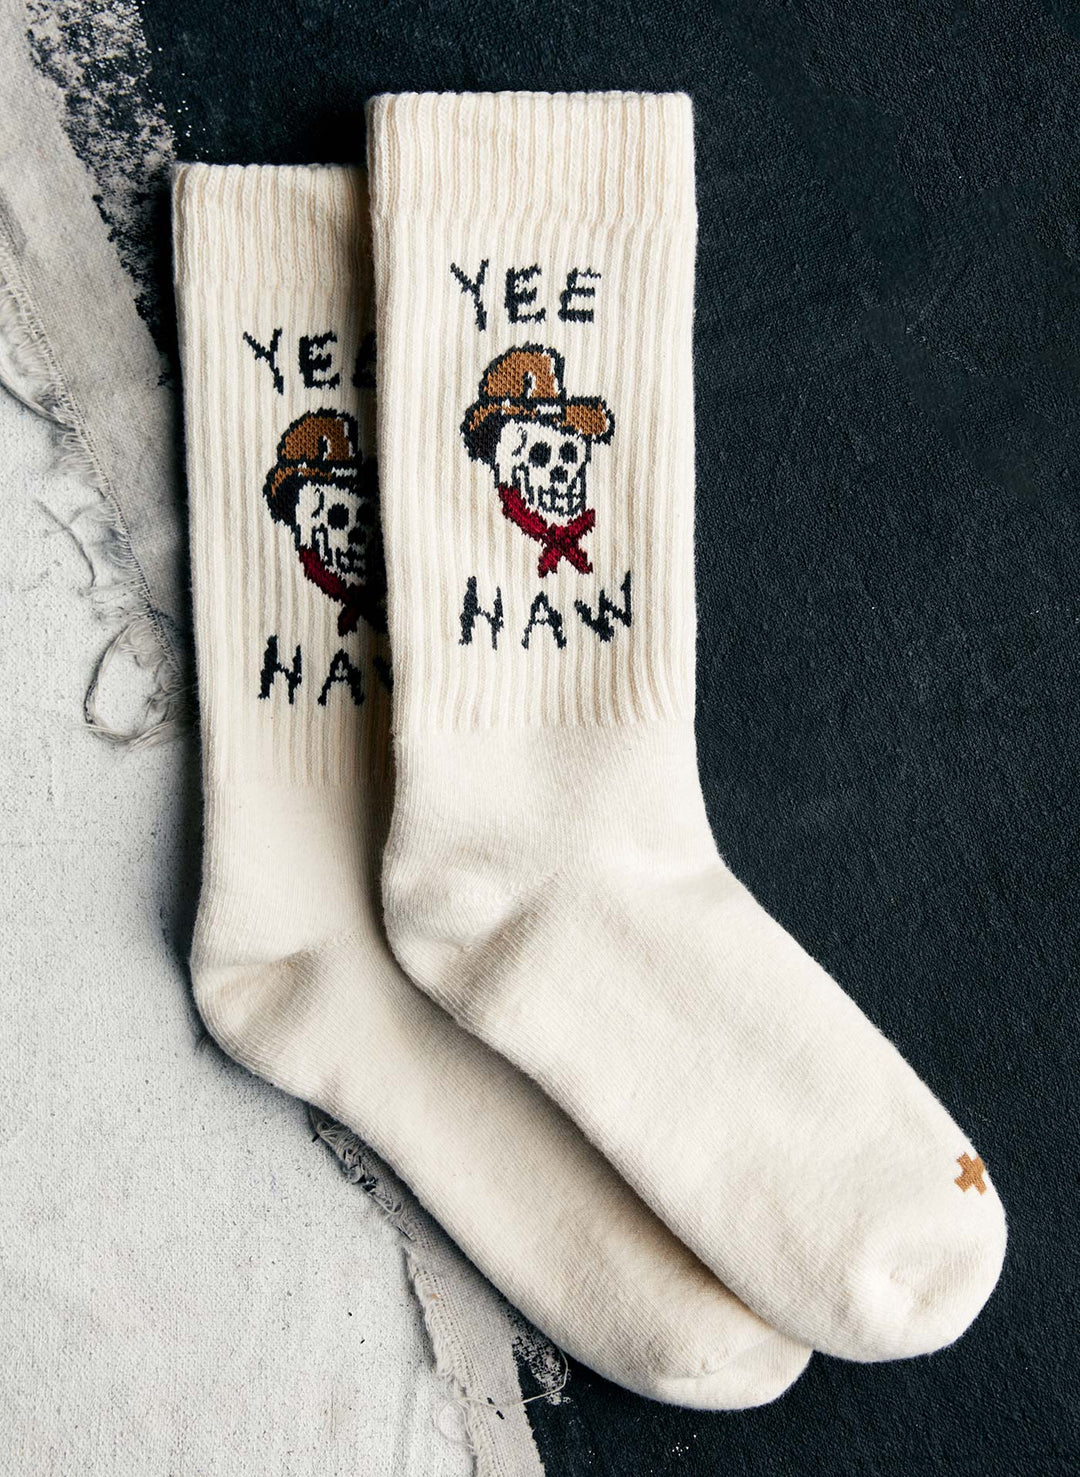 The Yee Haw Sock